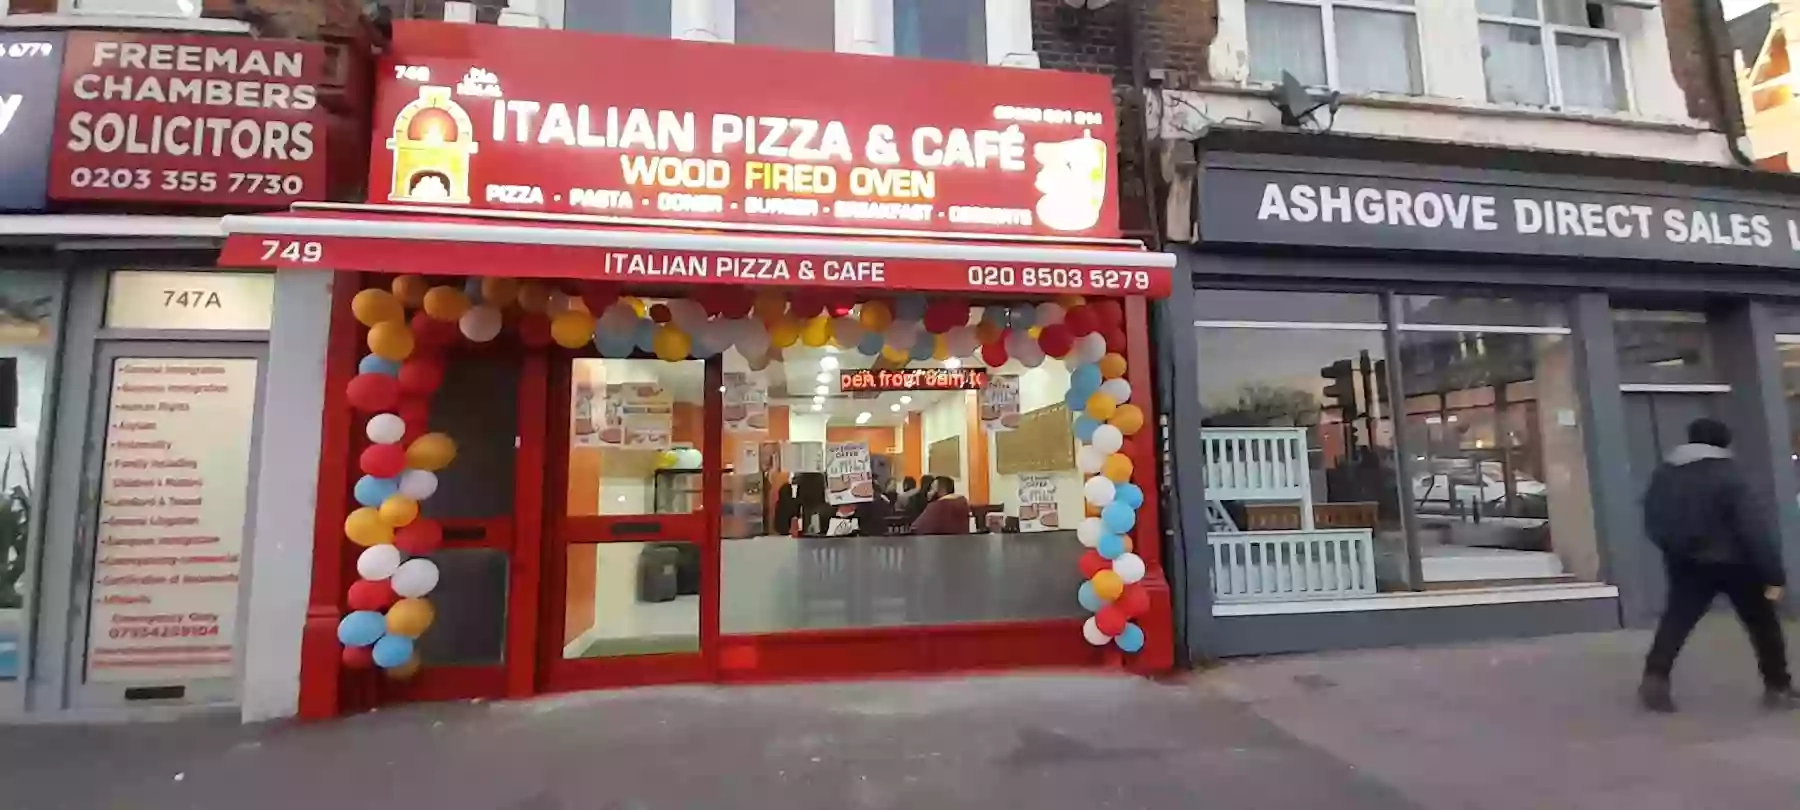 ITALIAN PIZZA & CAFE